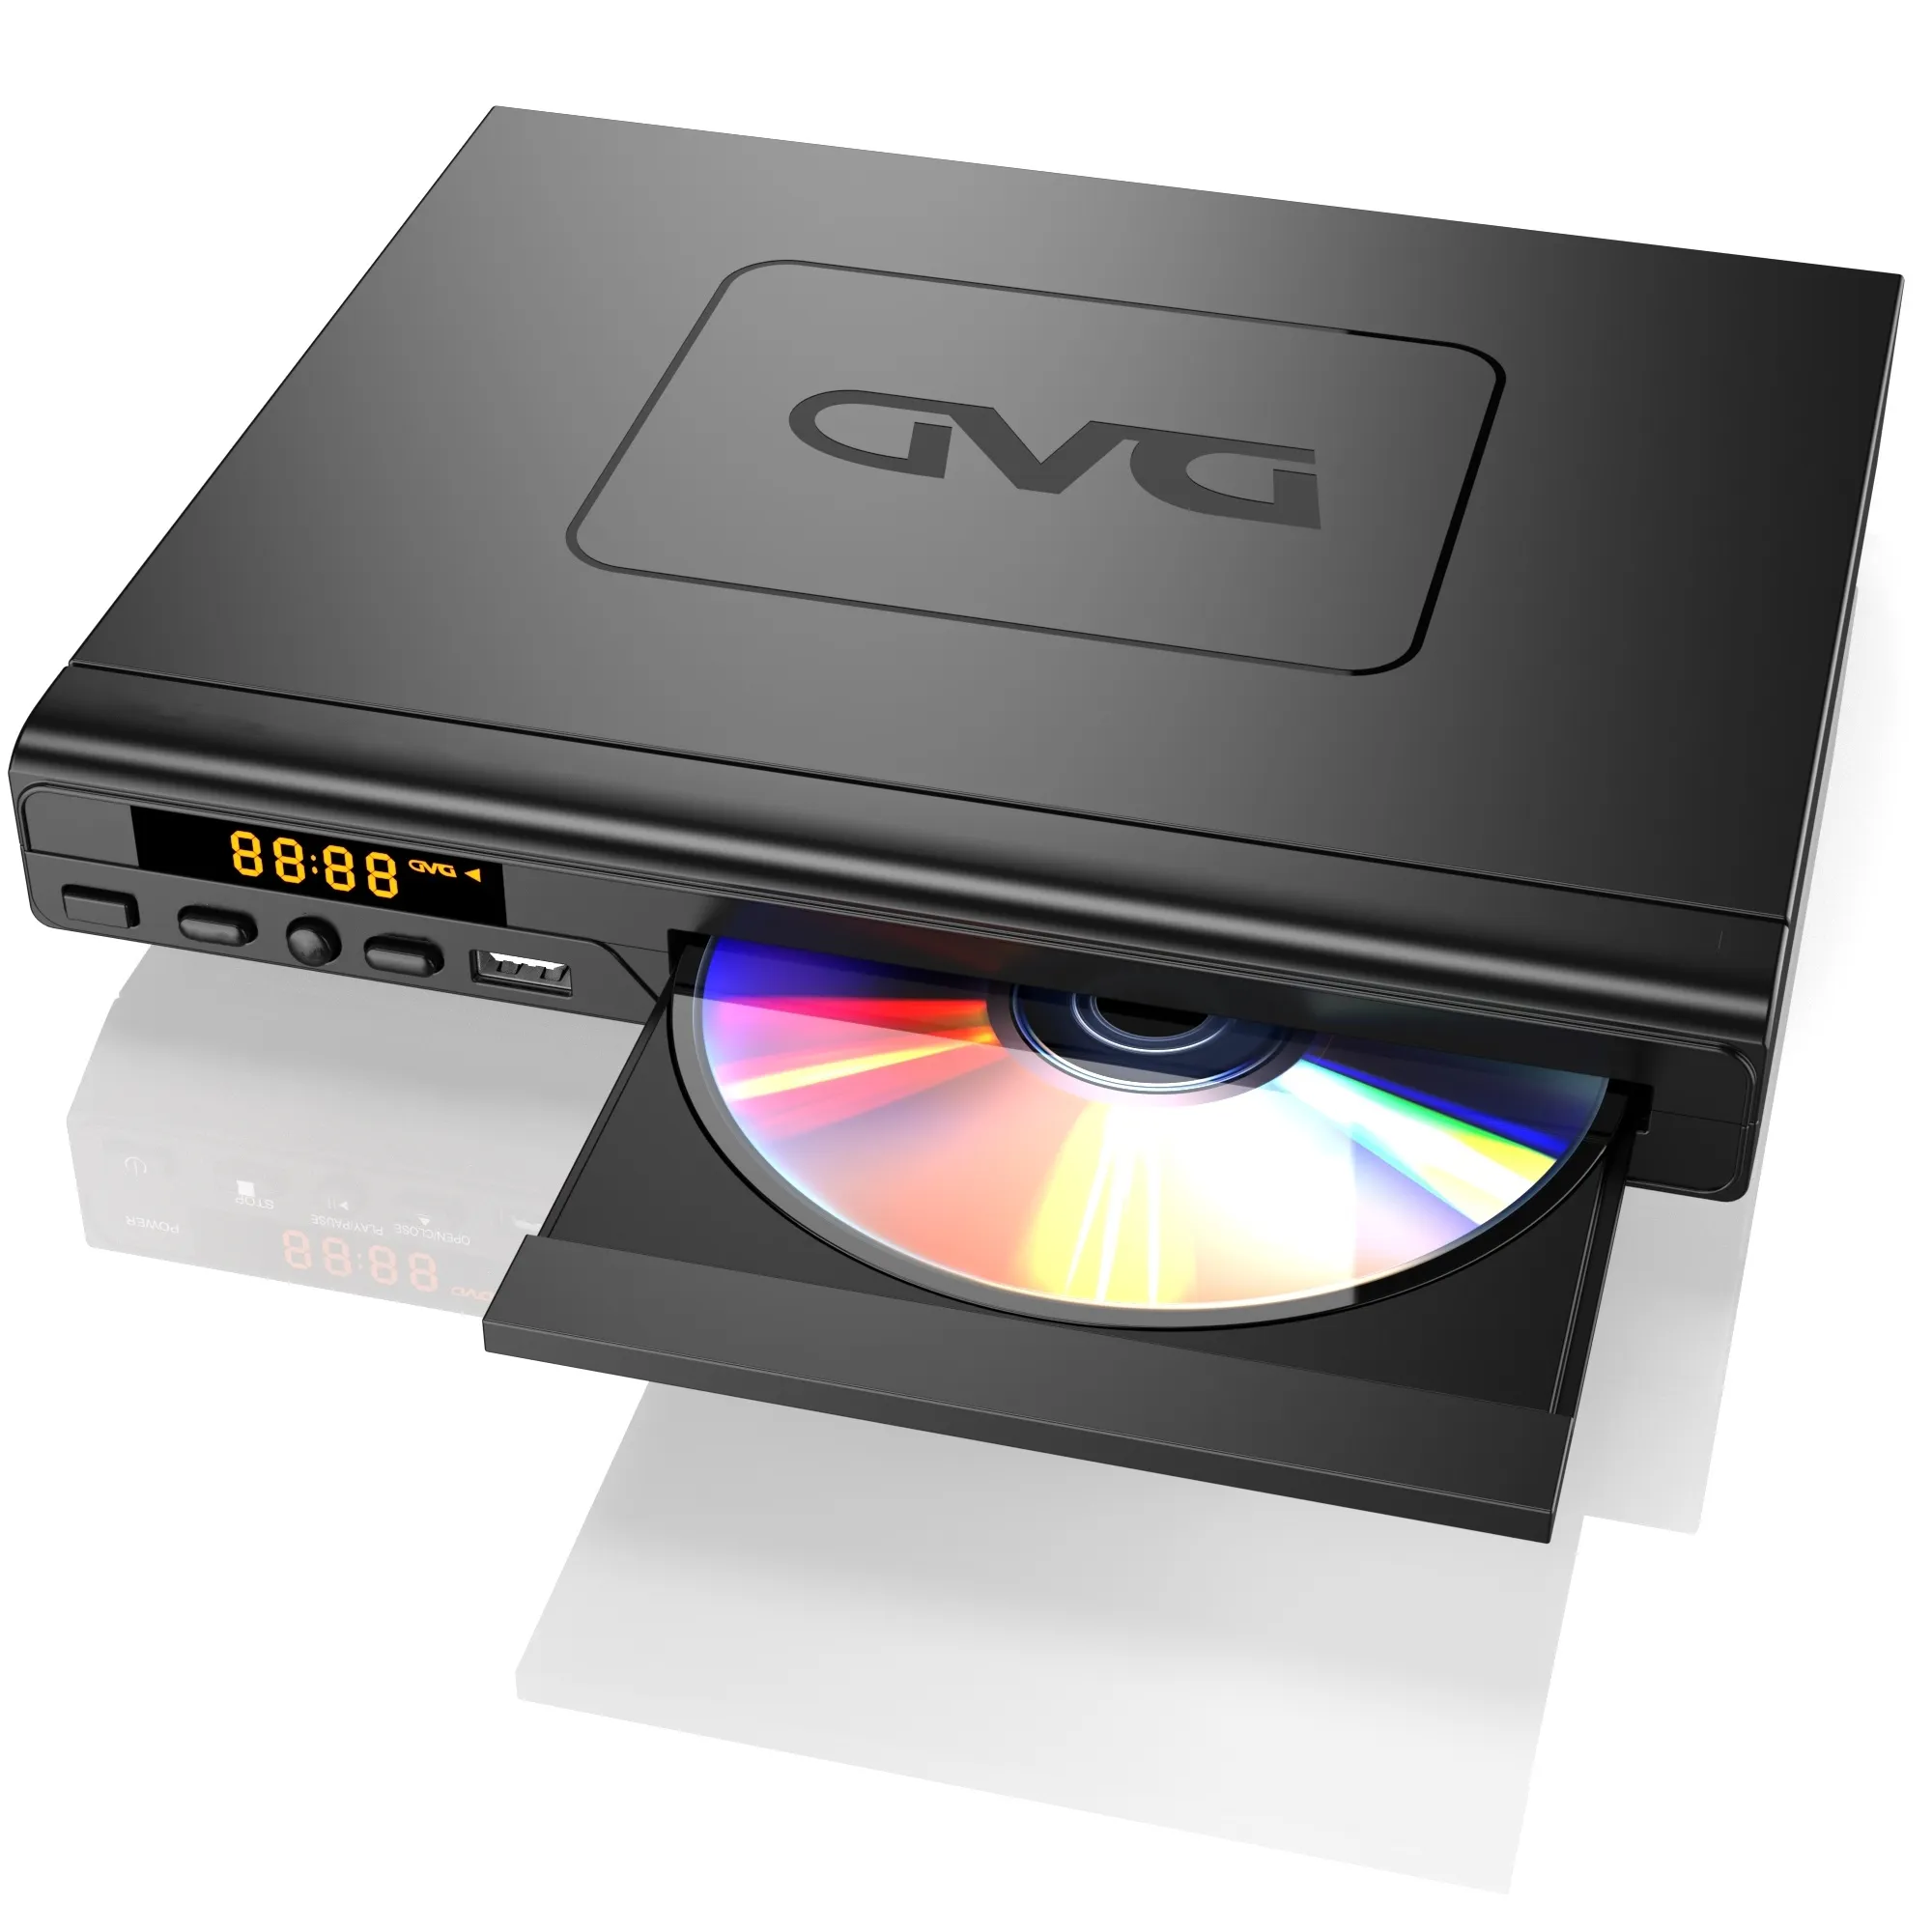 풀 HD 존 홈 TV DVD 플레이어, USB 슬롯 및 원격 제어가 있는 DVD/CD 플레이어